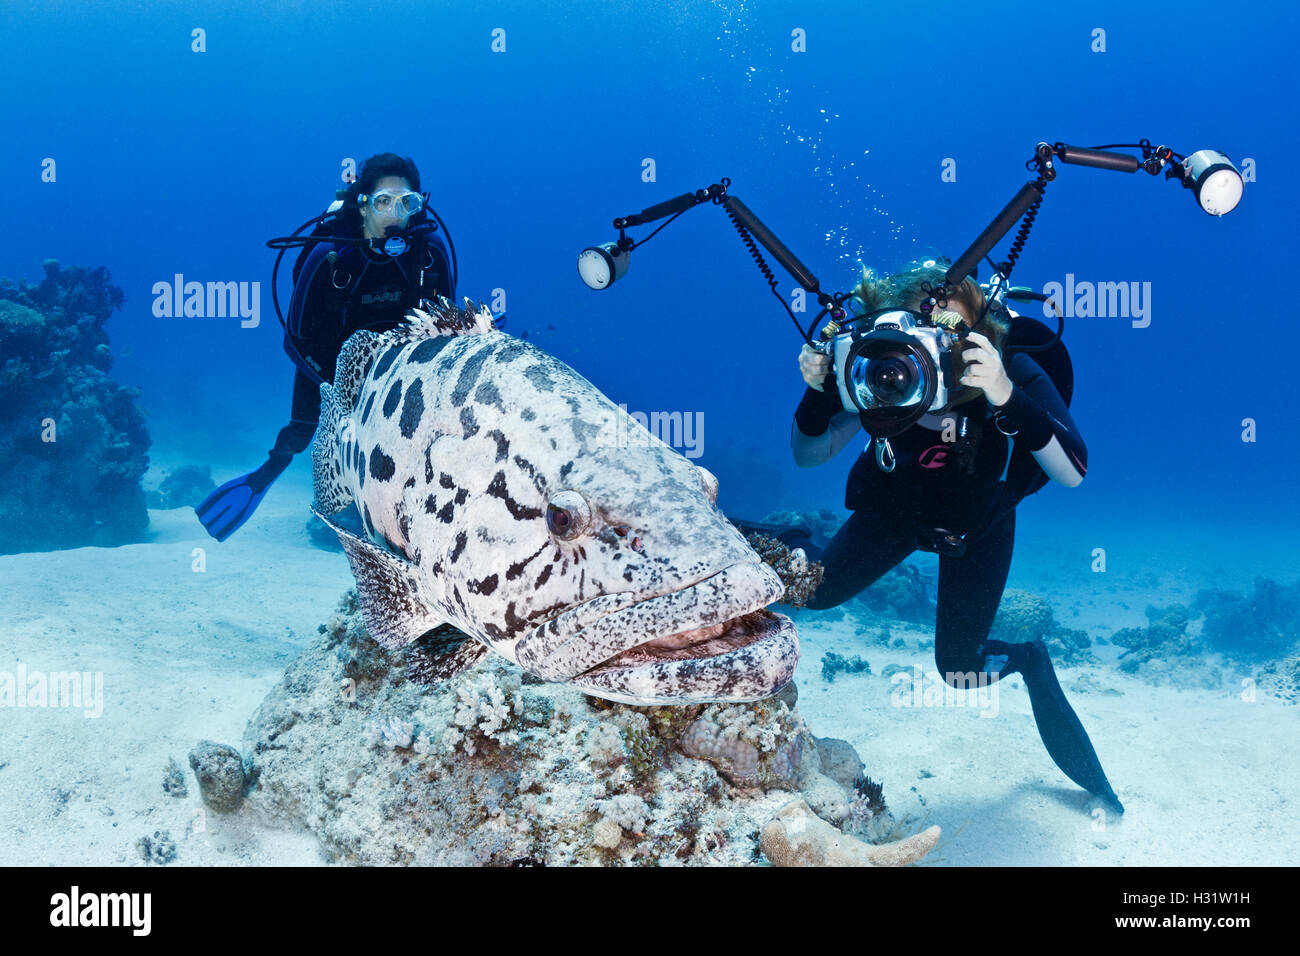 QZ41013-D. Patate (Epinephelus tukula) et les plongeurs, y compris un photographe sous-marin. L'Australie, Grande Barrière de Corail Banque D'Images